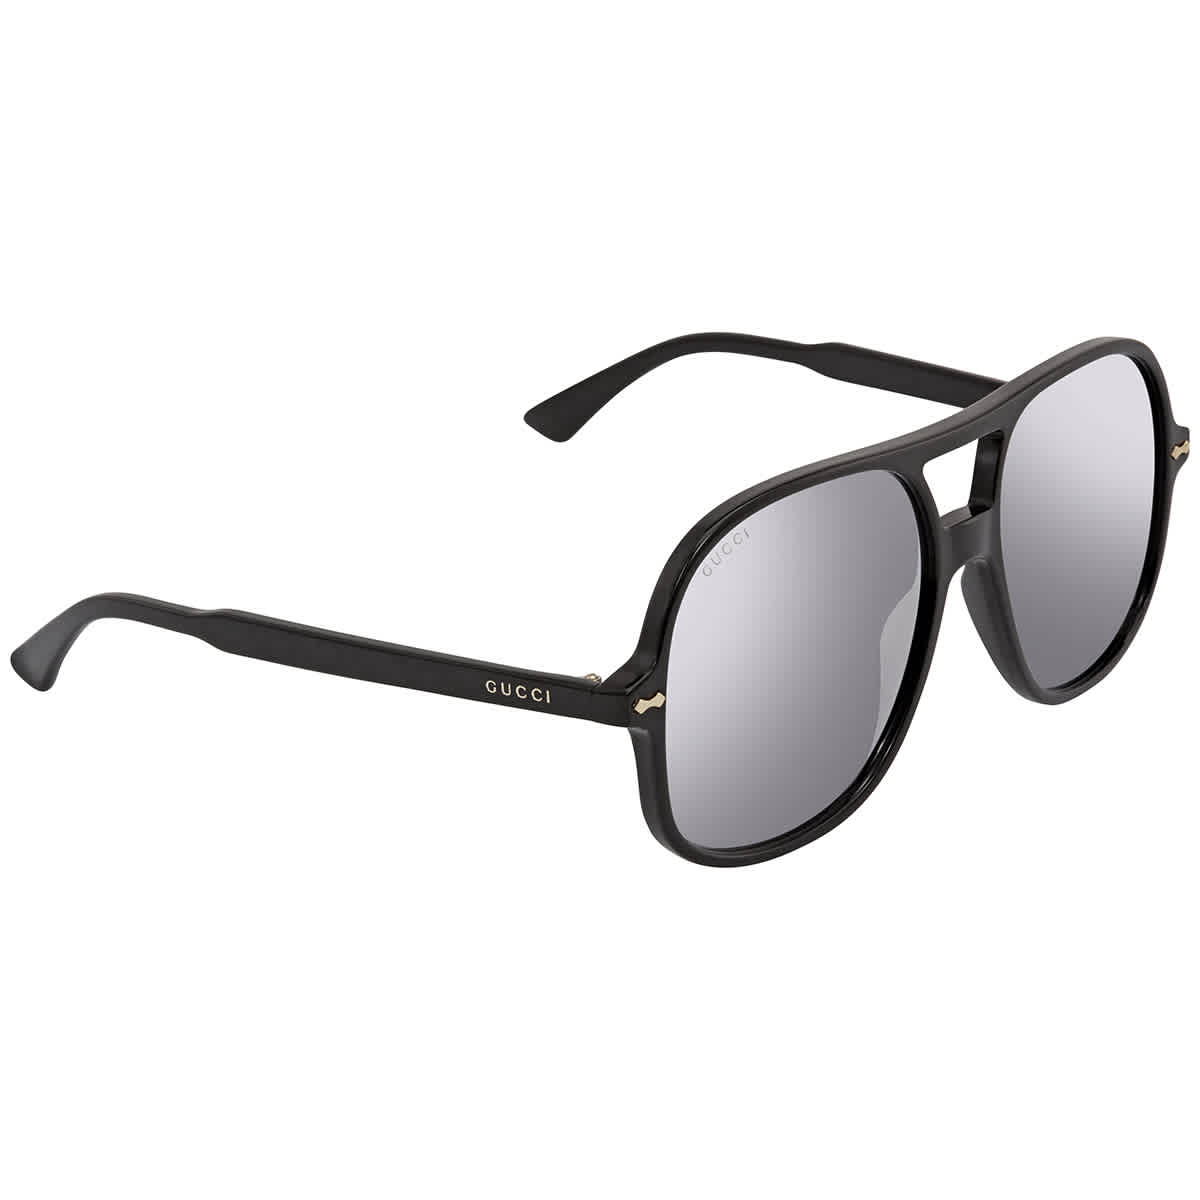 Gucci Silver Aviator Mens Sunglasses Gg0706s 001 58 In Black,silver Tone